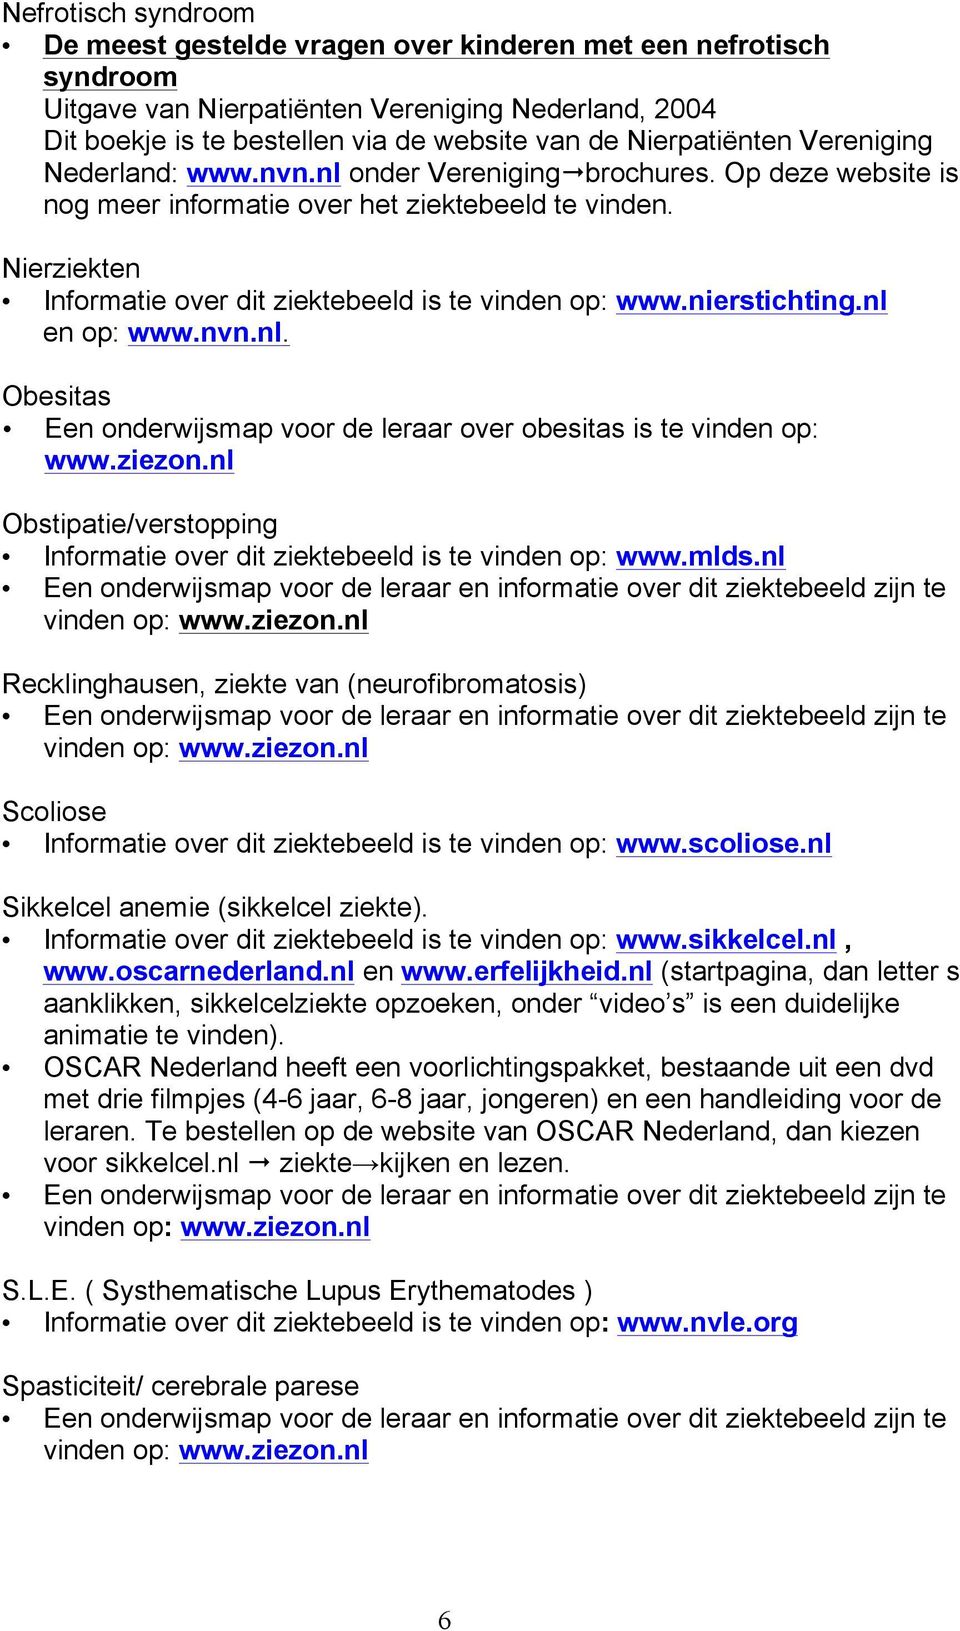 Nierziekten Informatie over dit ziektebeeld is te vinden op: www.nierstichting.nl en op: www.nvn.nl. Obesitas Een onderwijsmap voor de leraar over obesitas is te vinden op: www.ziezon.